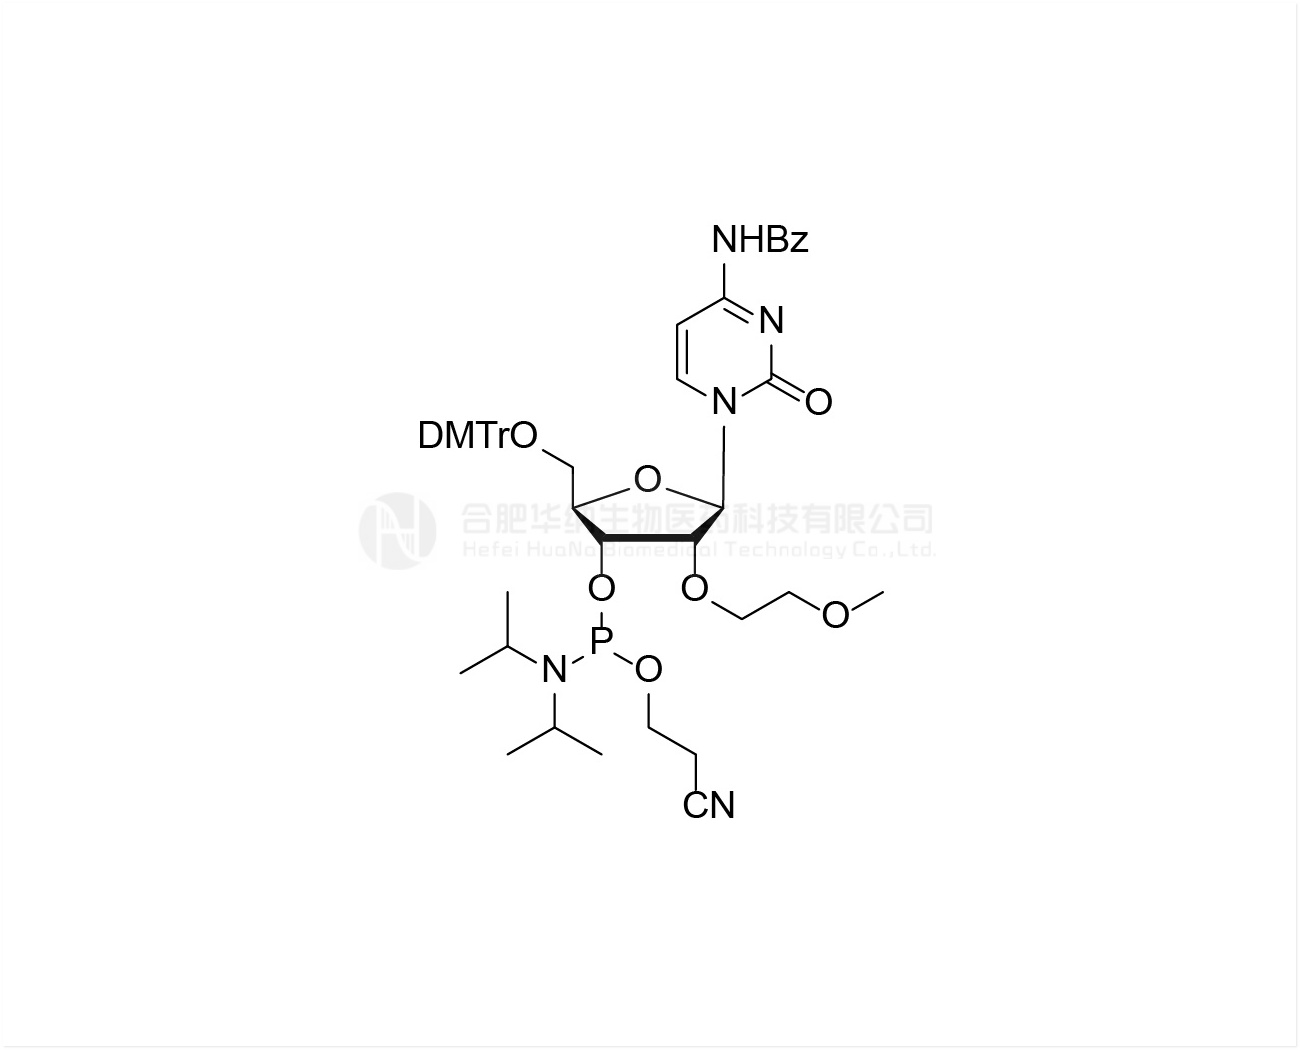 DMTr-2'-O-MOE-rC(Bz)-3'-CE -Phosphoramidite